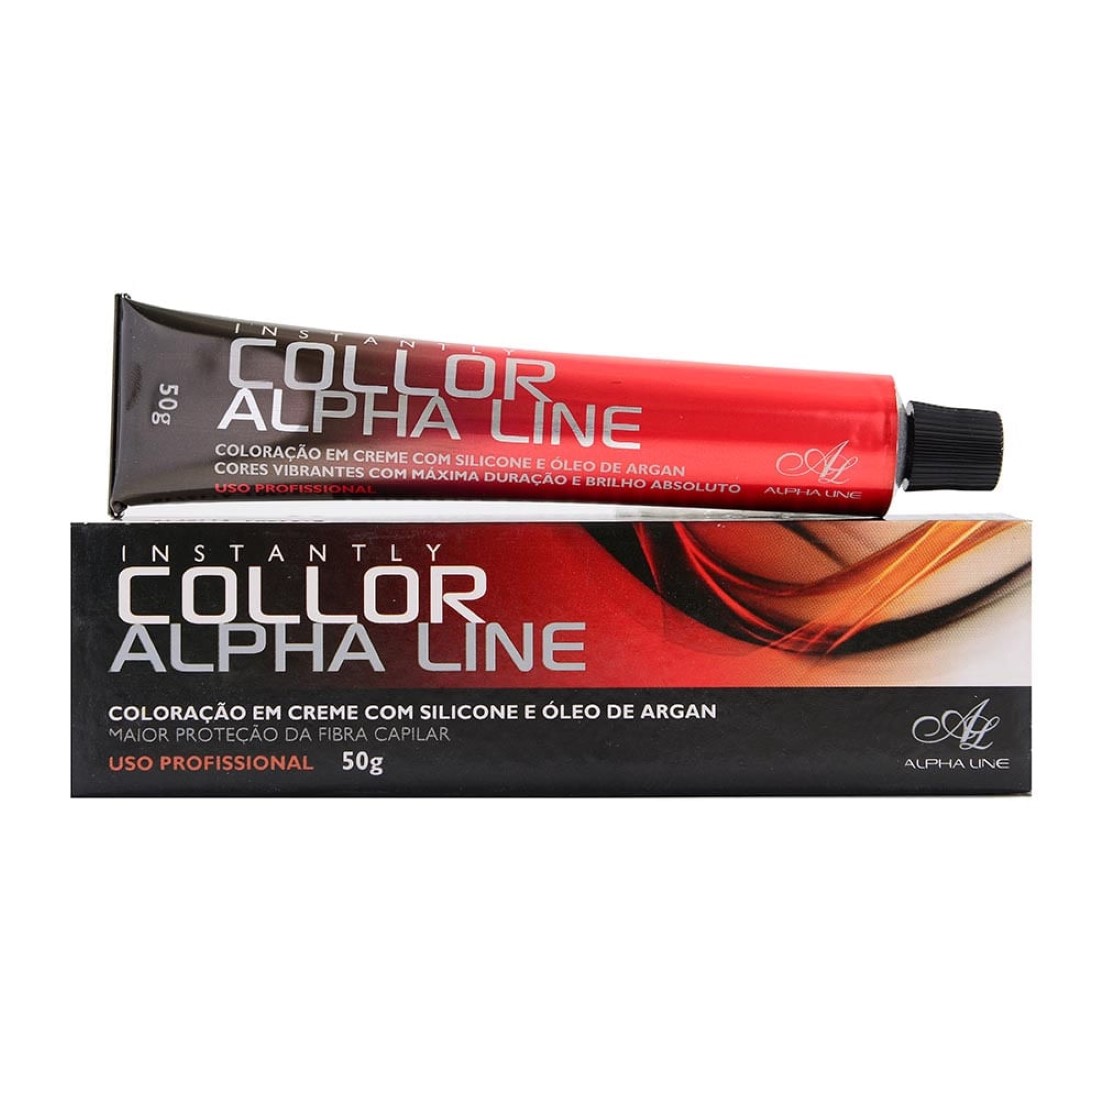 Coloração Instantly Collor Castanho Claro Cinza 5.1 - Alpha Line